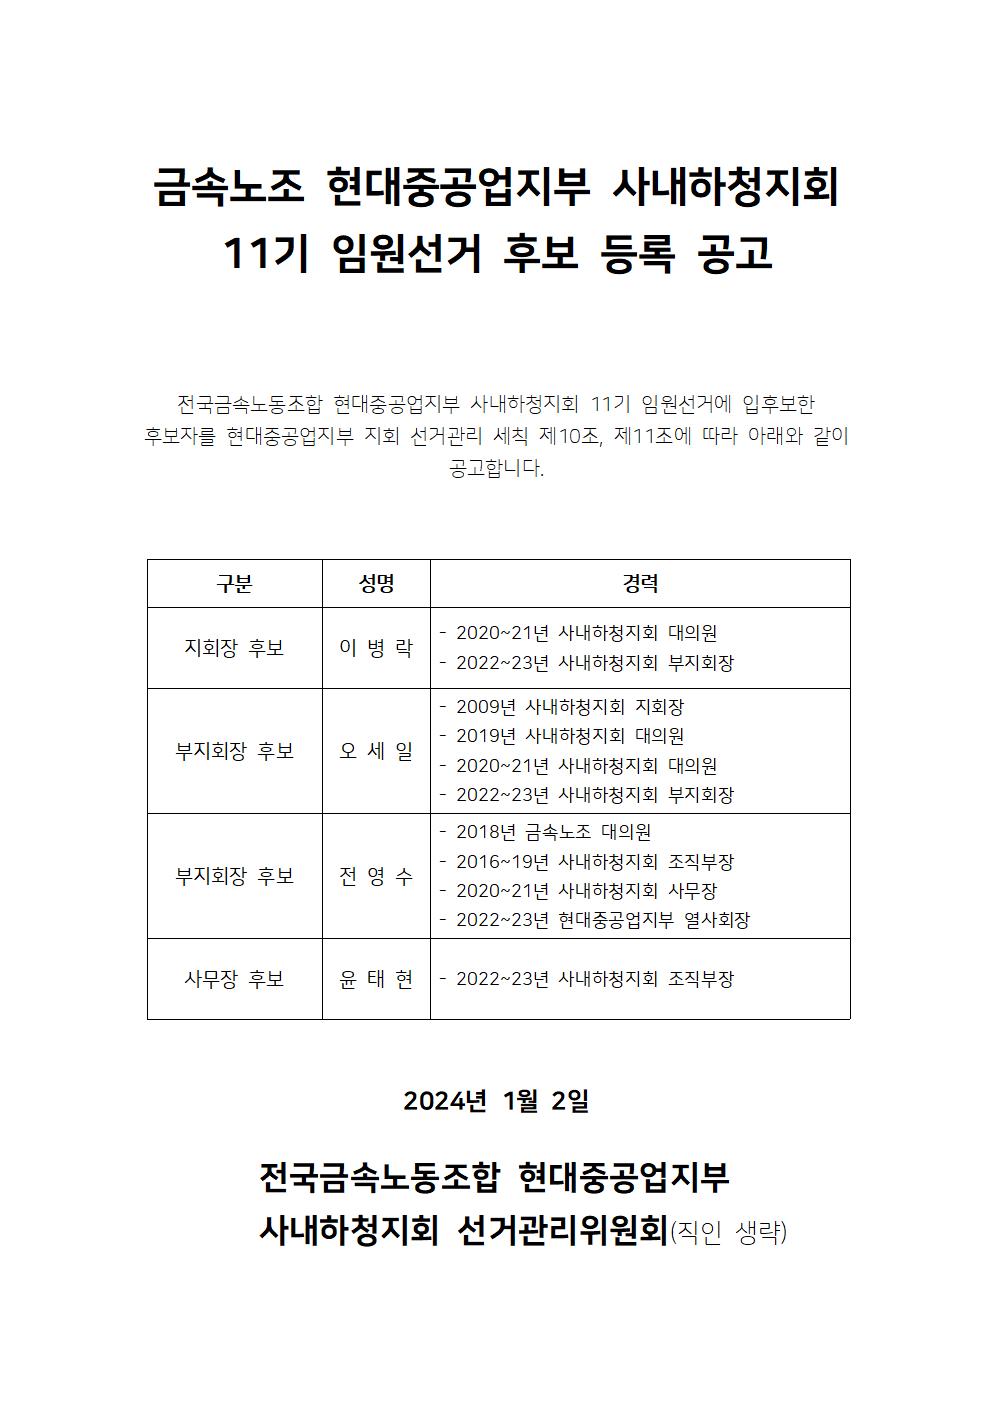 11기임원선거_후보등록공고_20240102001.jpg